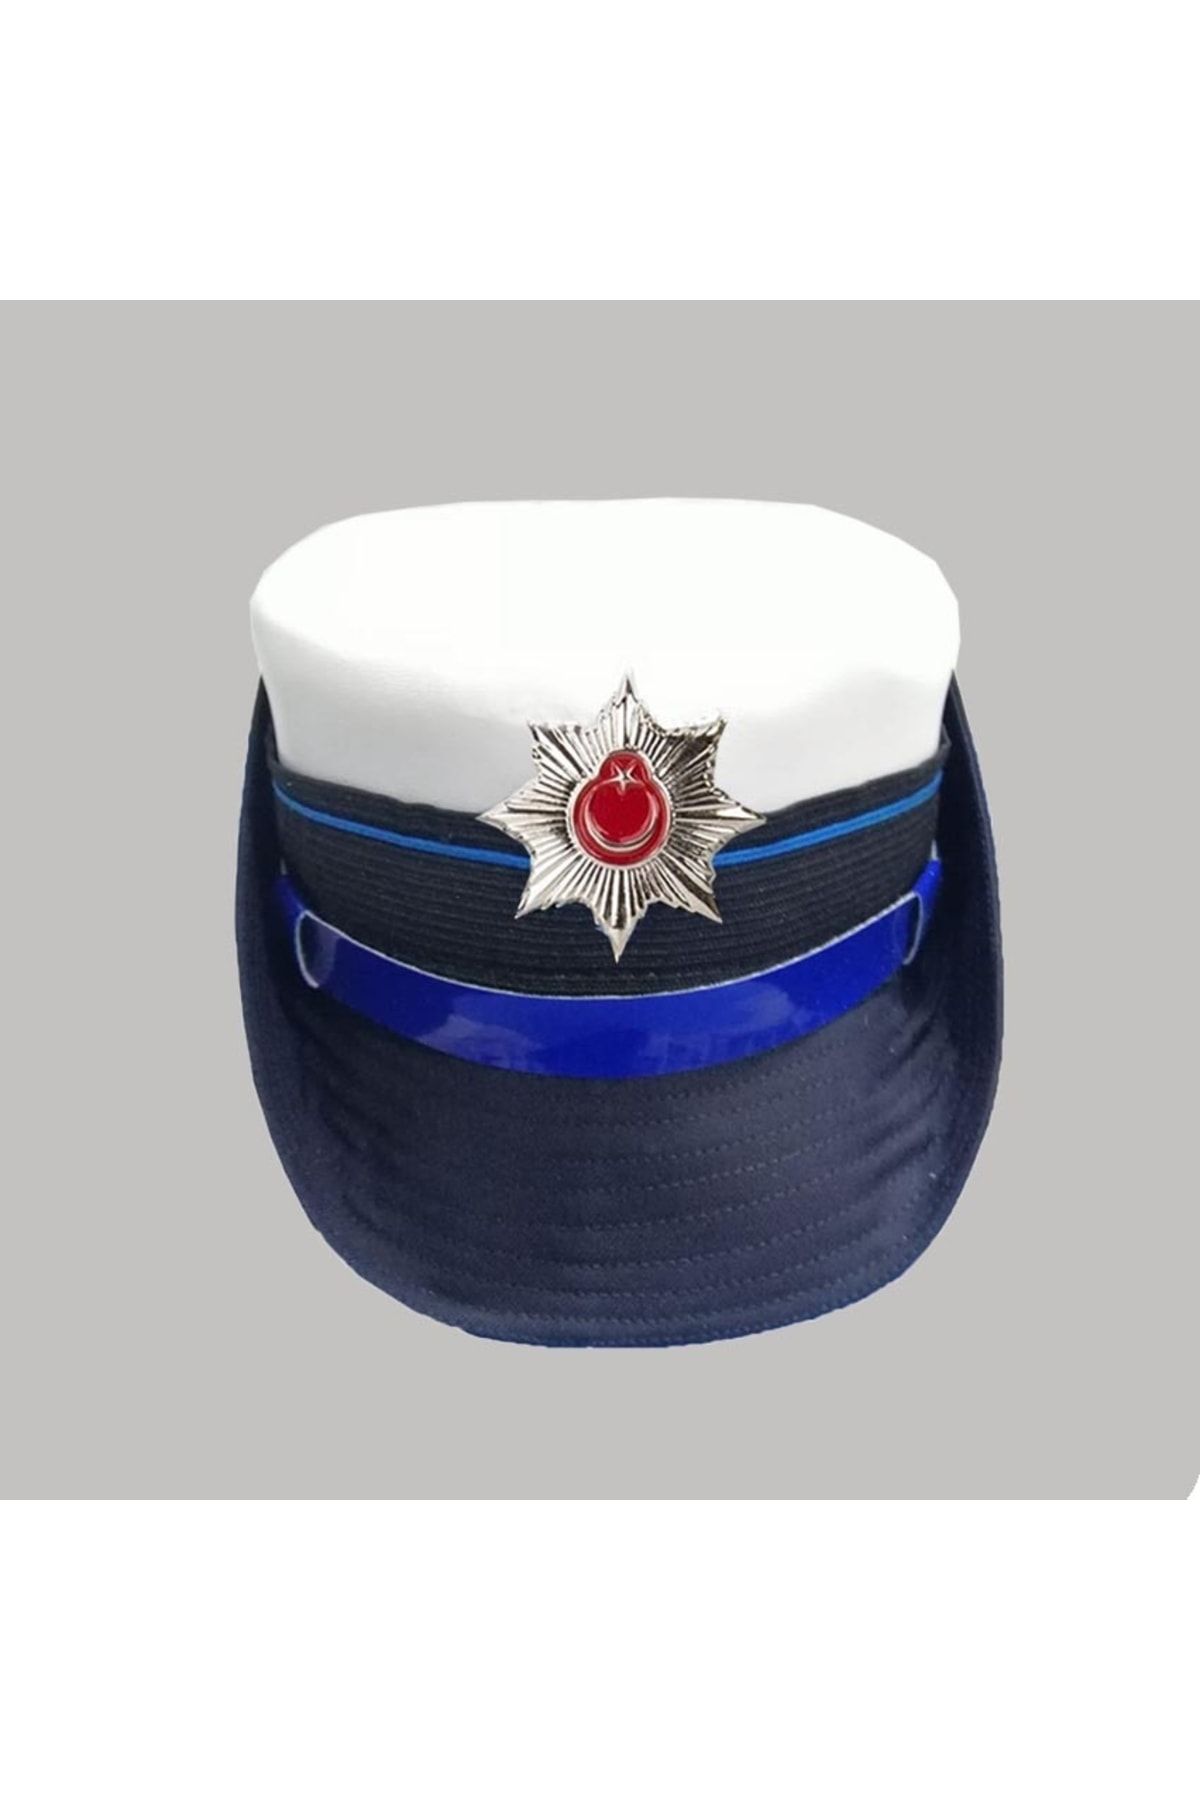 AskerVadisi Beyaz Trfk-pls Tören Şapkası ( Kep ) Beyaz Renk 59 No (59 Cm)